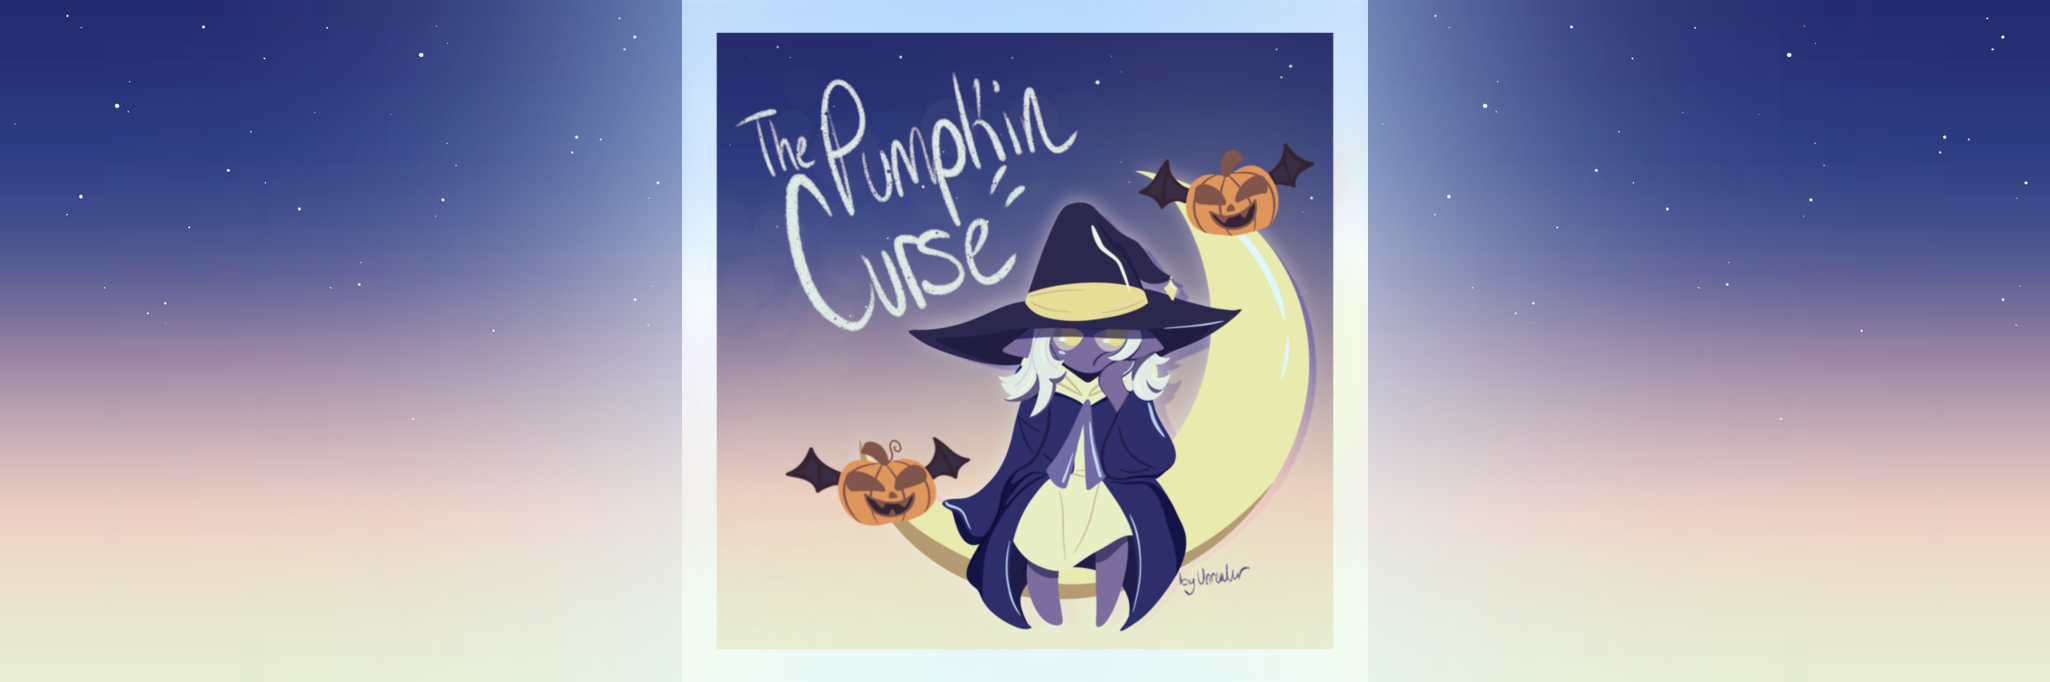 The Pumpkin Curse